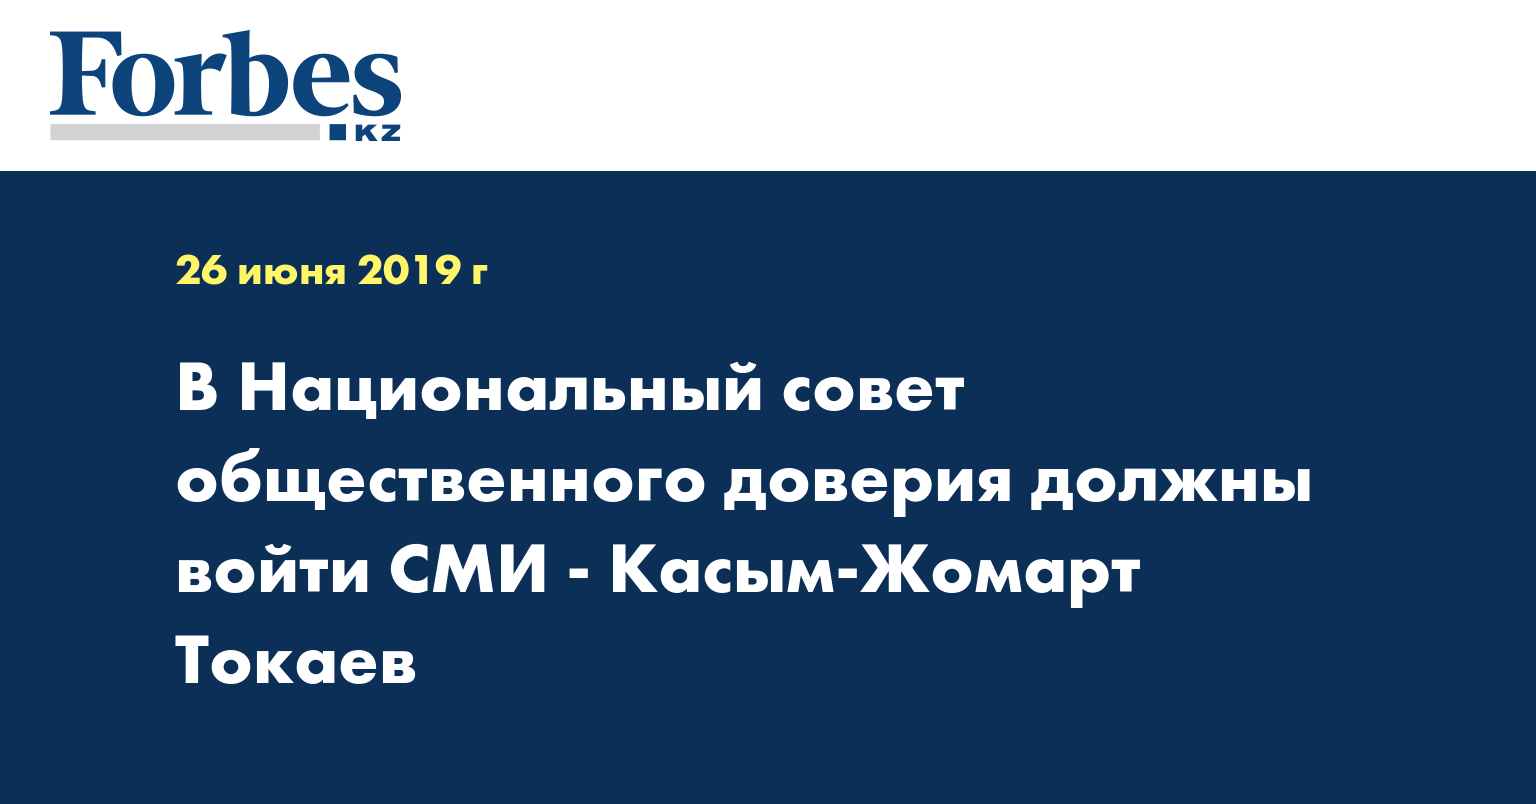 В Национальный совет общественного доверия должны войти СМИ - Касым-Жомарт Токаев